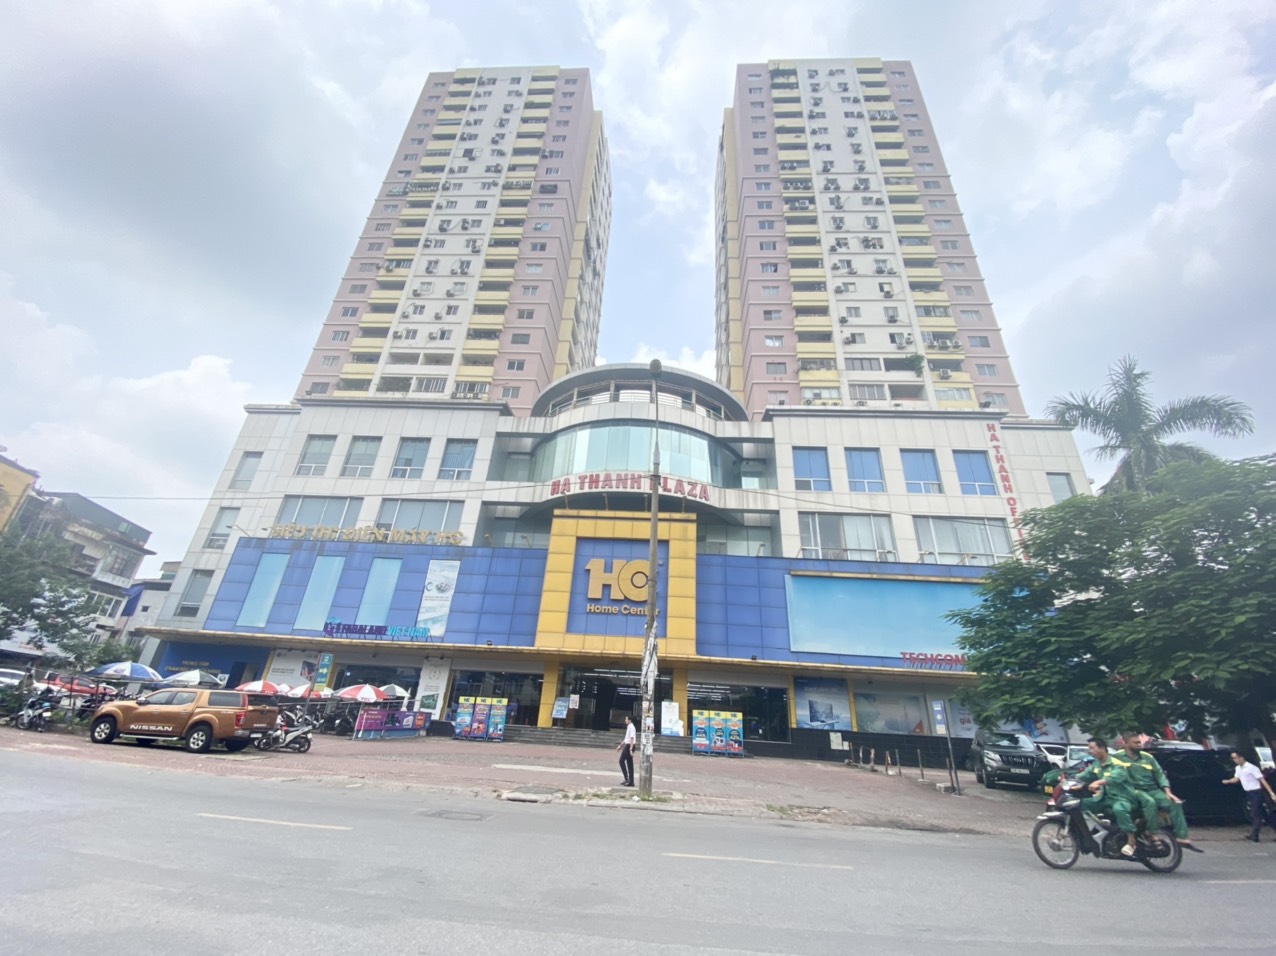 💥Bán gấp chung cư Hà Thành Plaza 102 Thái Thịnh 68m, 2PN, mặt phố tiện ích, 2.95 tỷ💥 13901598